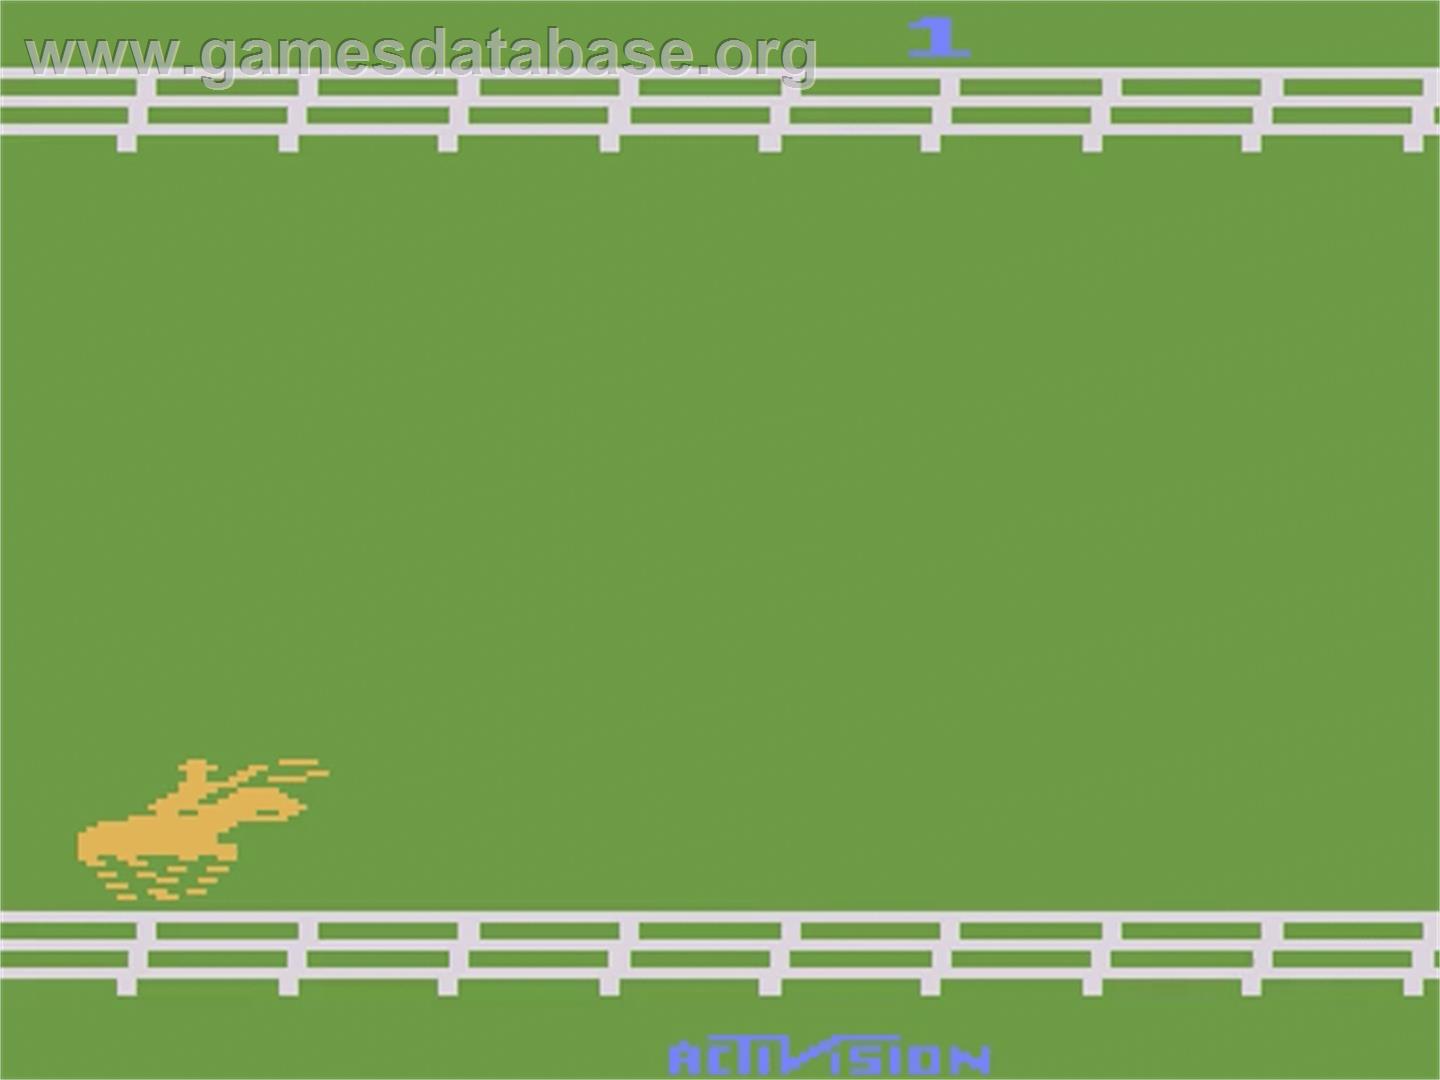 Stampede - Atari 2600 - Artwork - Title Screen